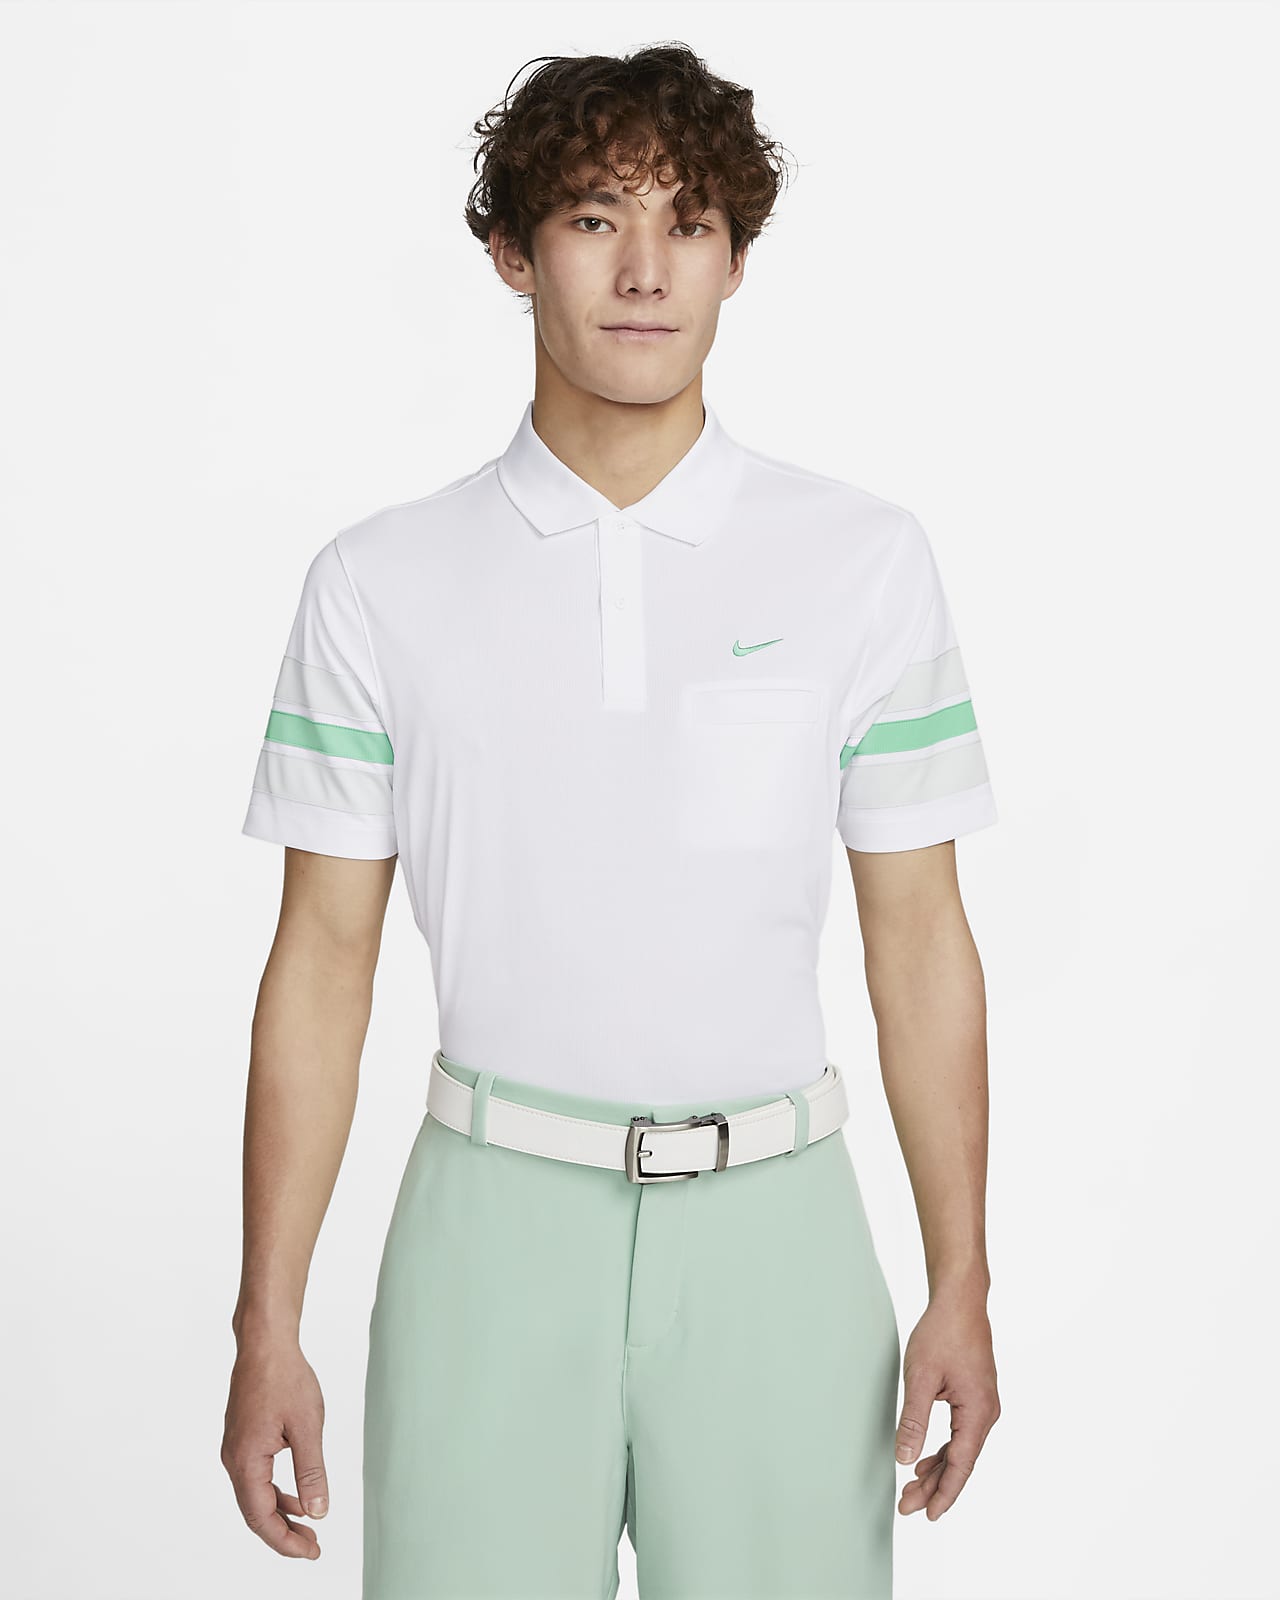 Nike White Sox Golf Polo  White nikes, Fashion, Clothes design